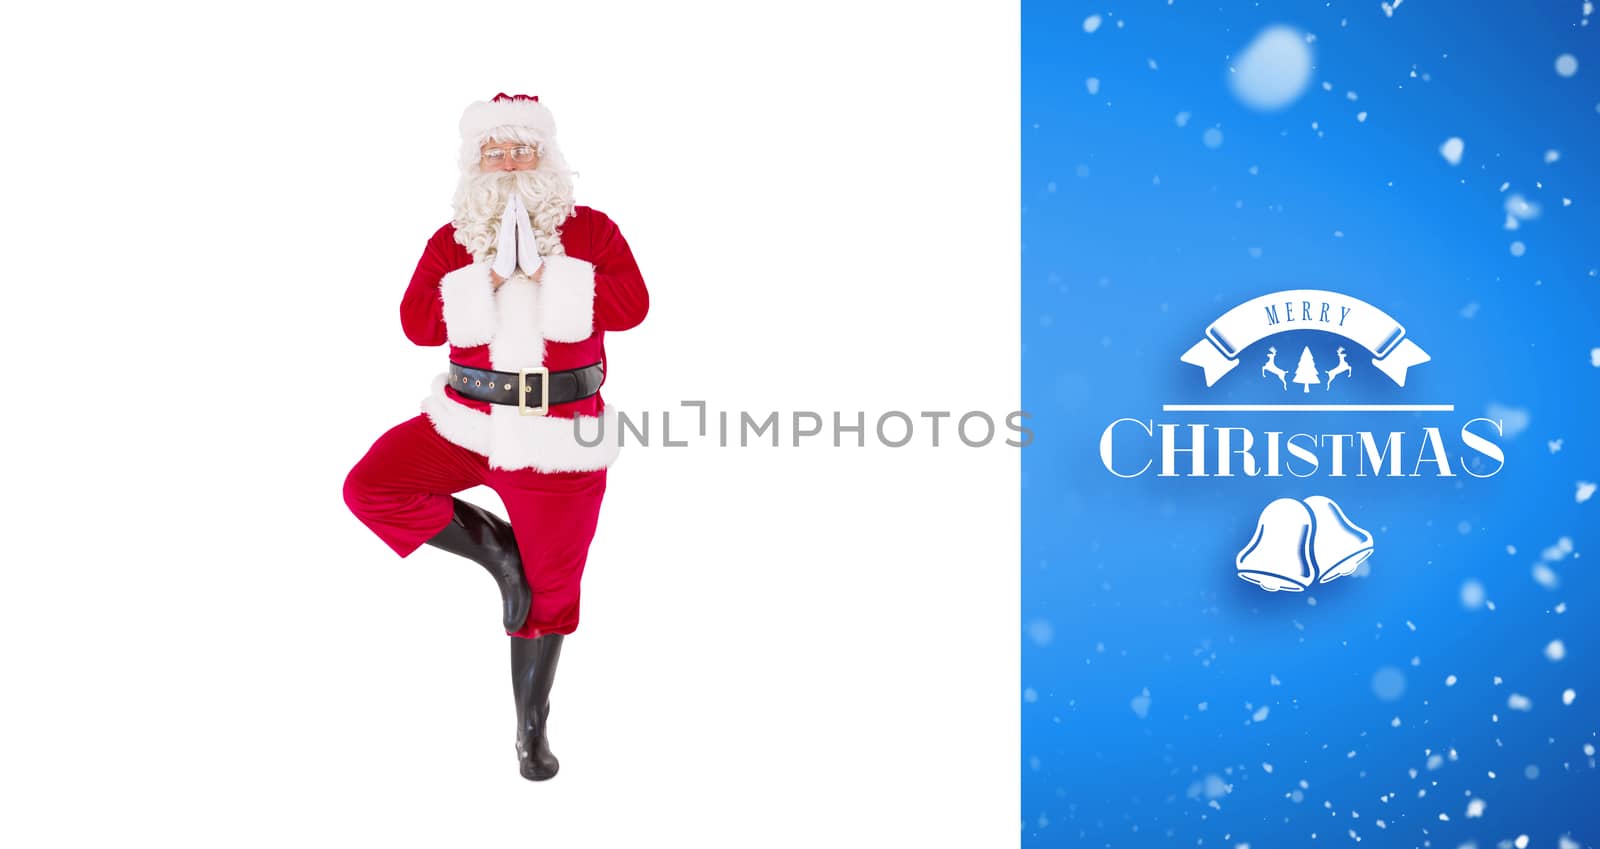 Santa claus in tree pose  against blue vignette